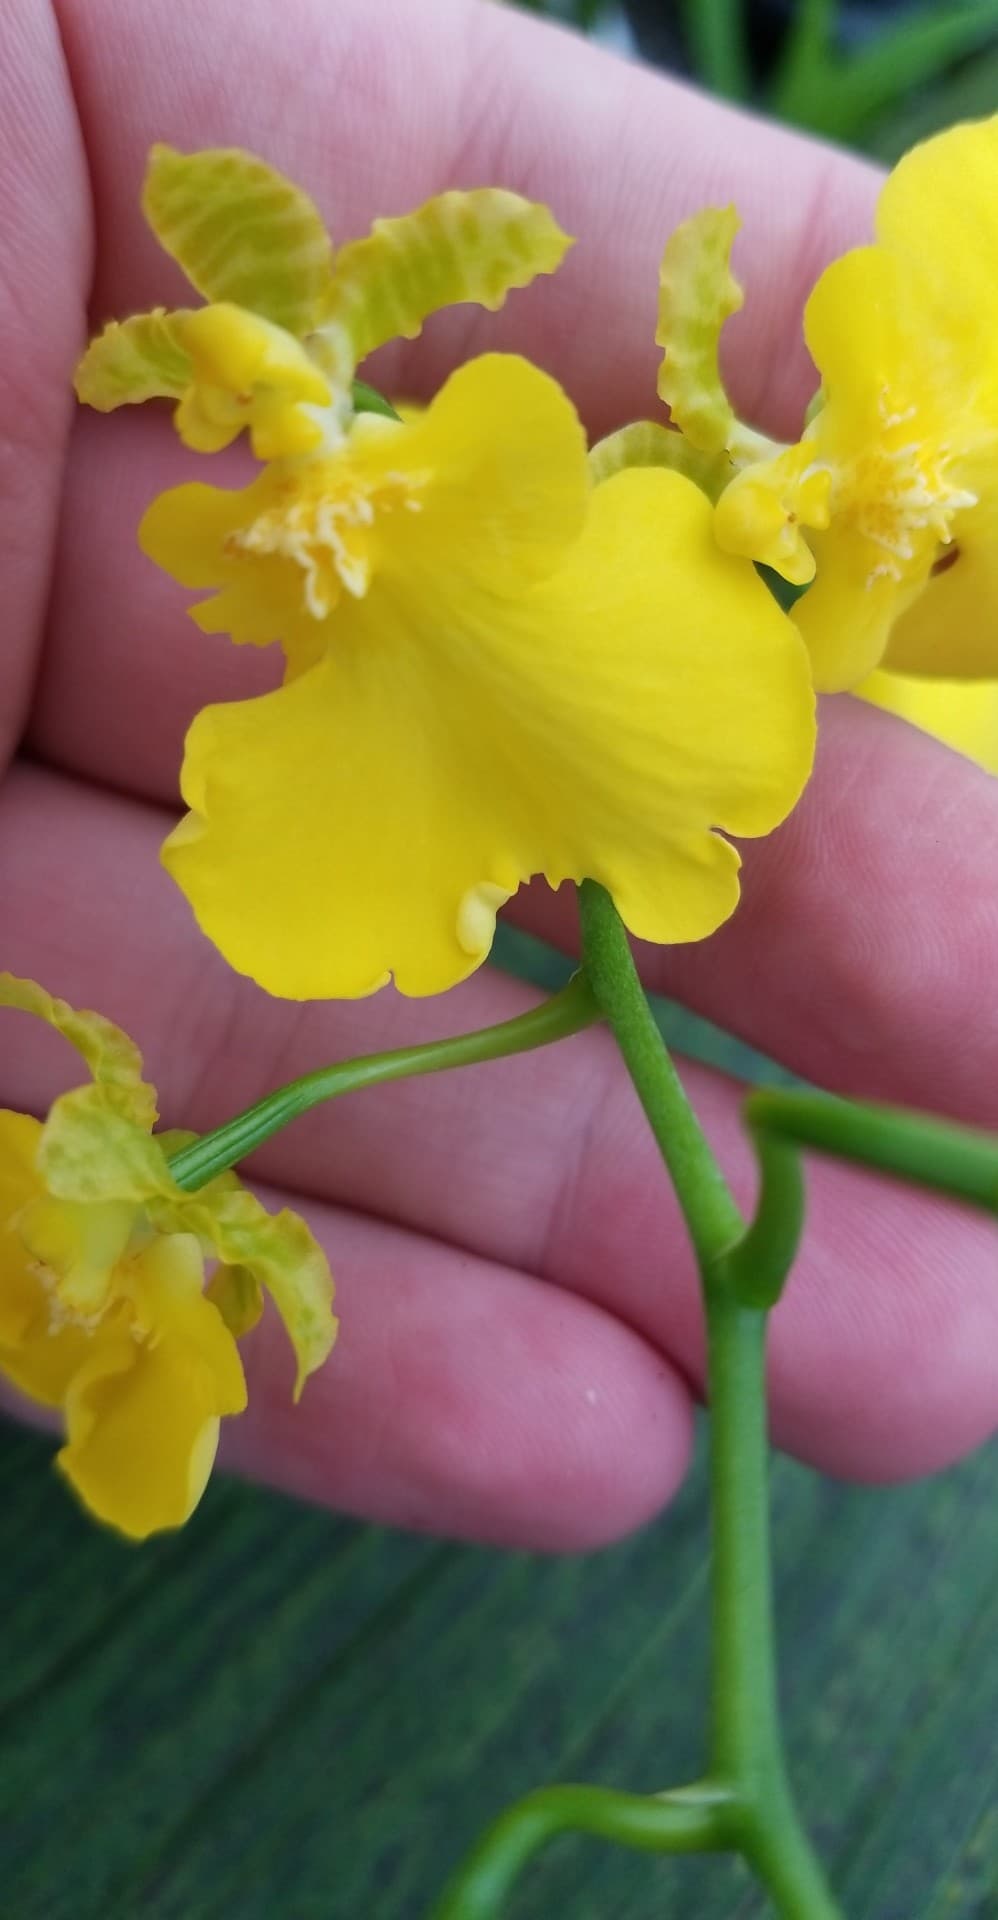 Oncidium Sweet Sugar 'Lemon Drop' - Dr. Bill's Orchids, LLC